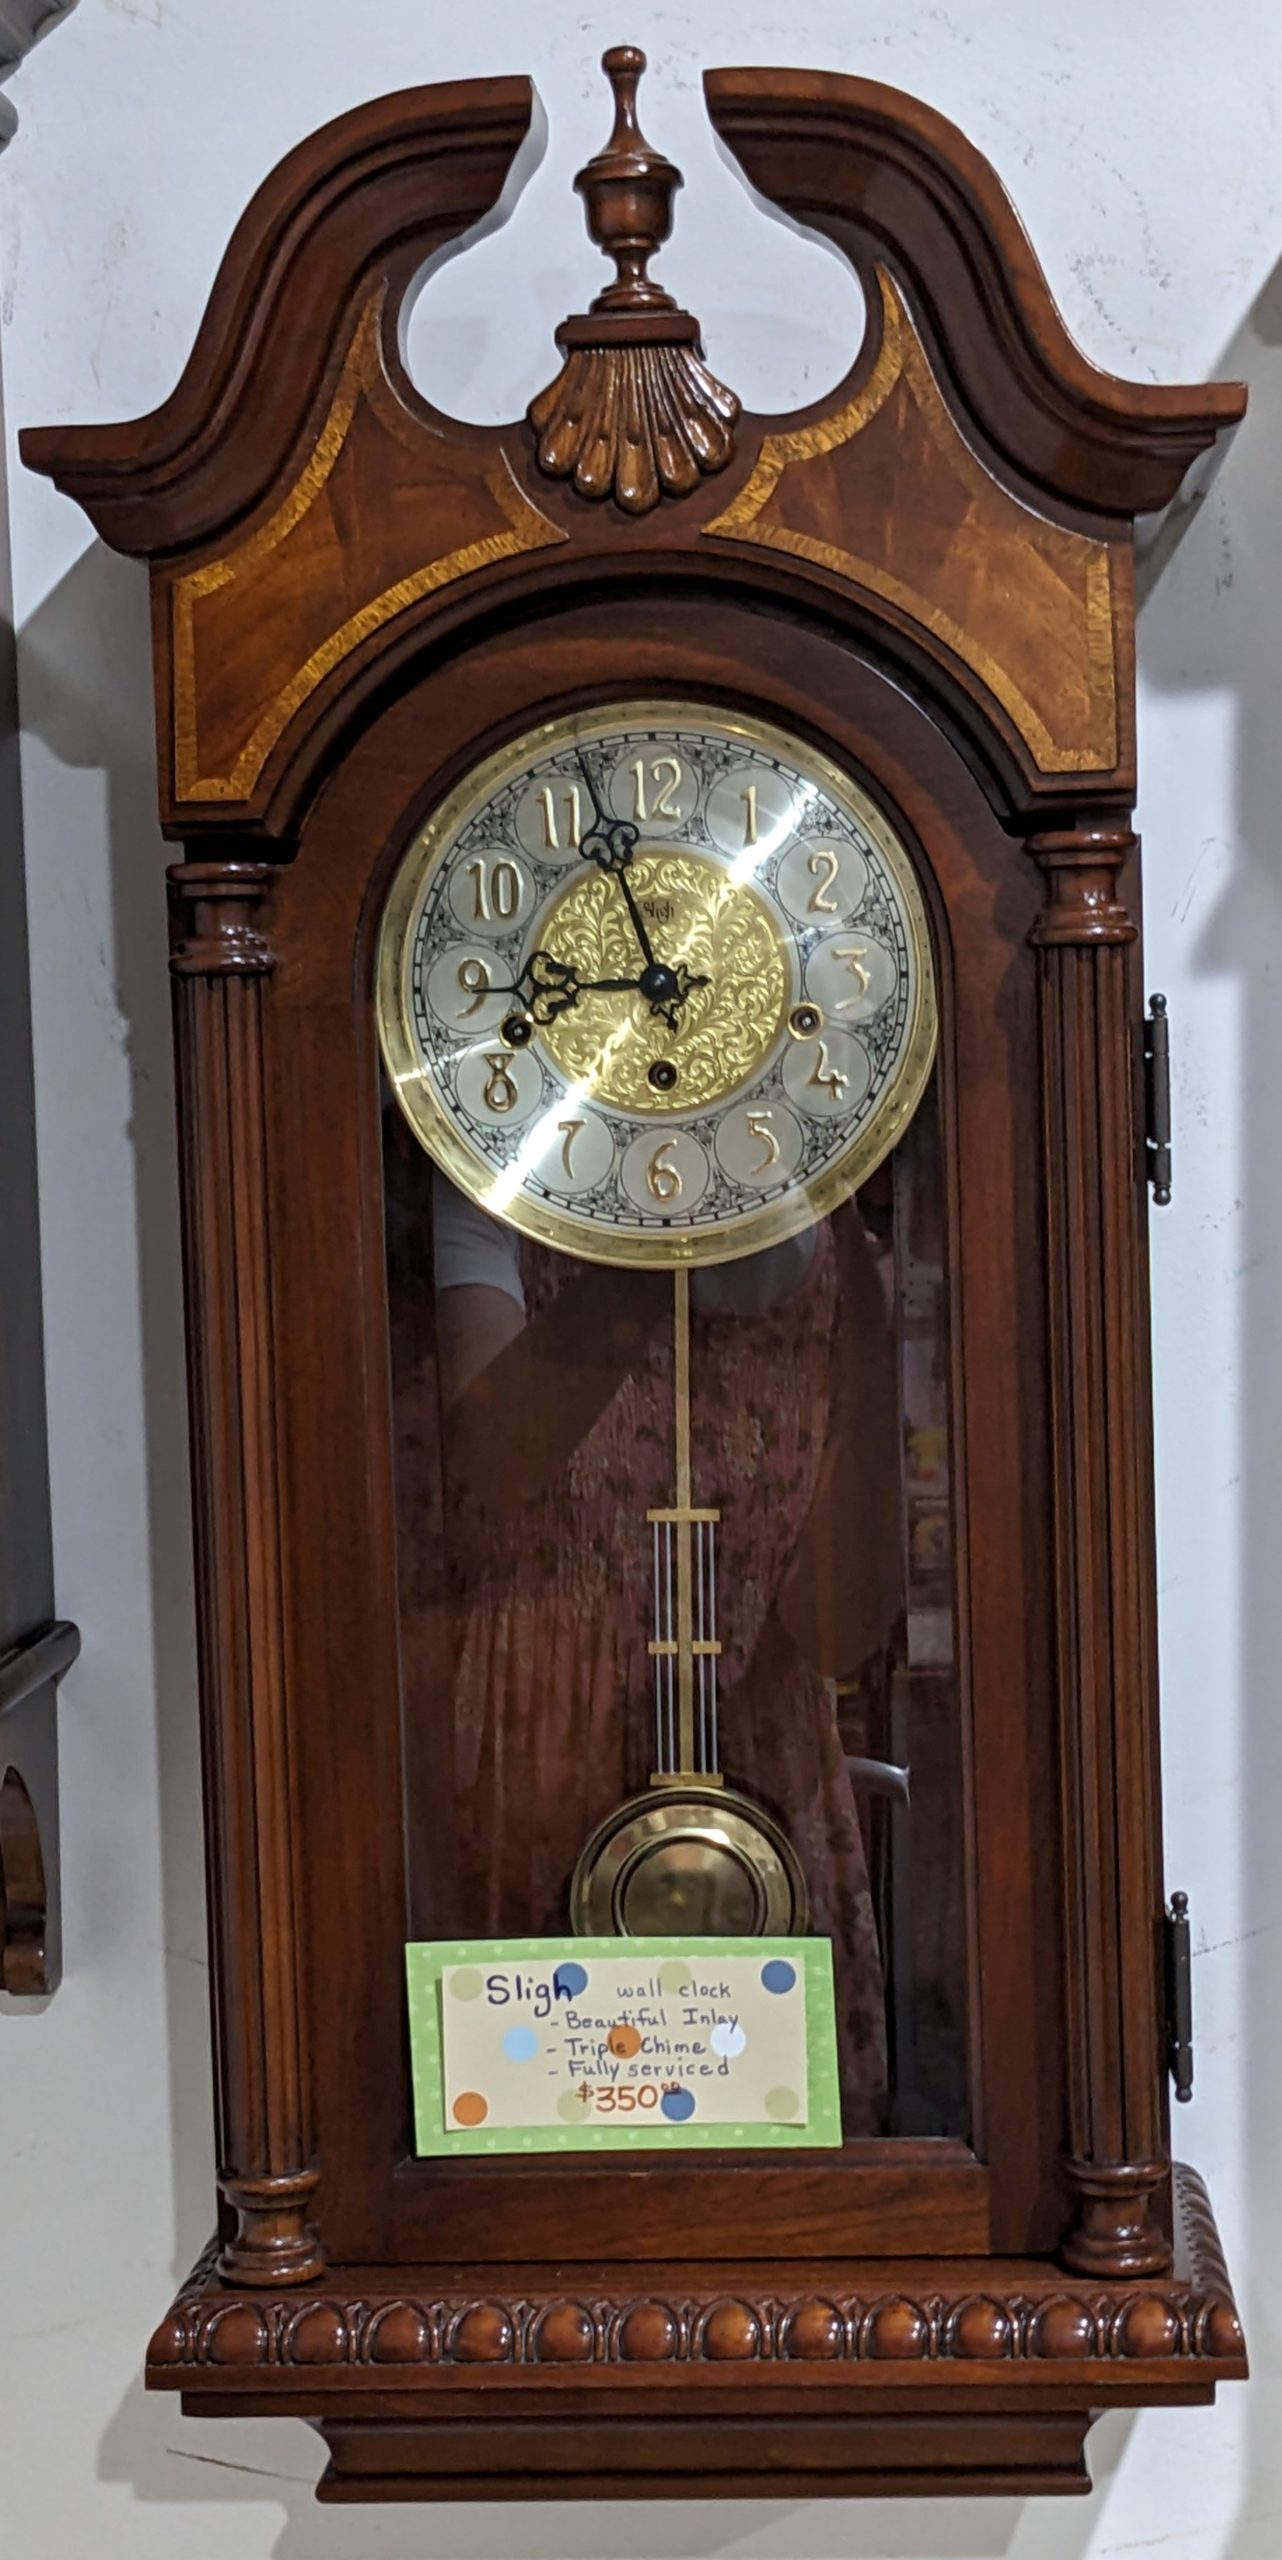 Sligh wall clock — $350